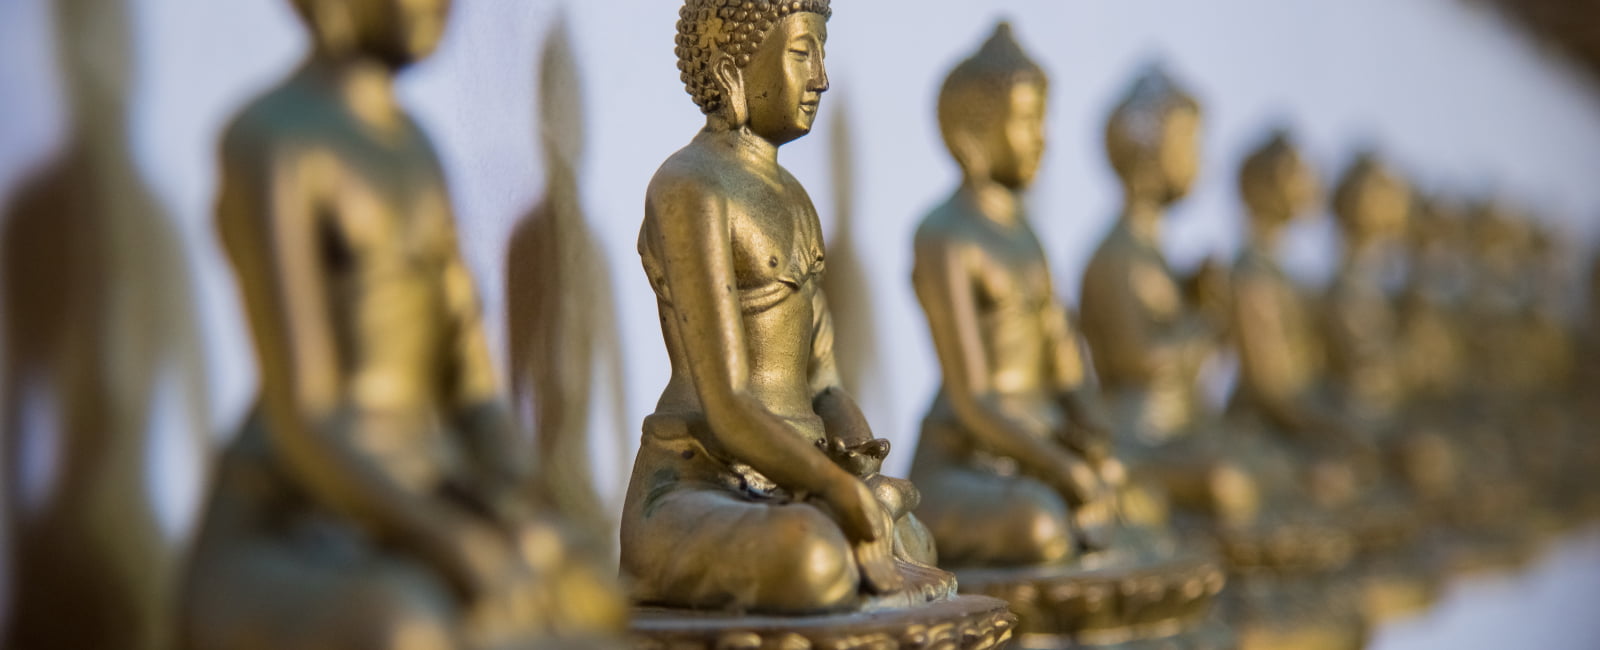 Esculturas religiosas asiáticas en fila